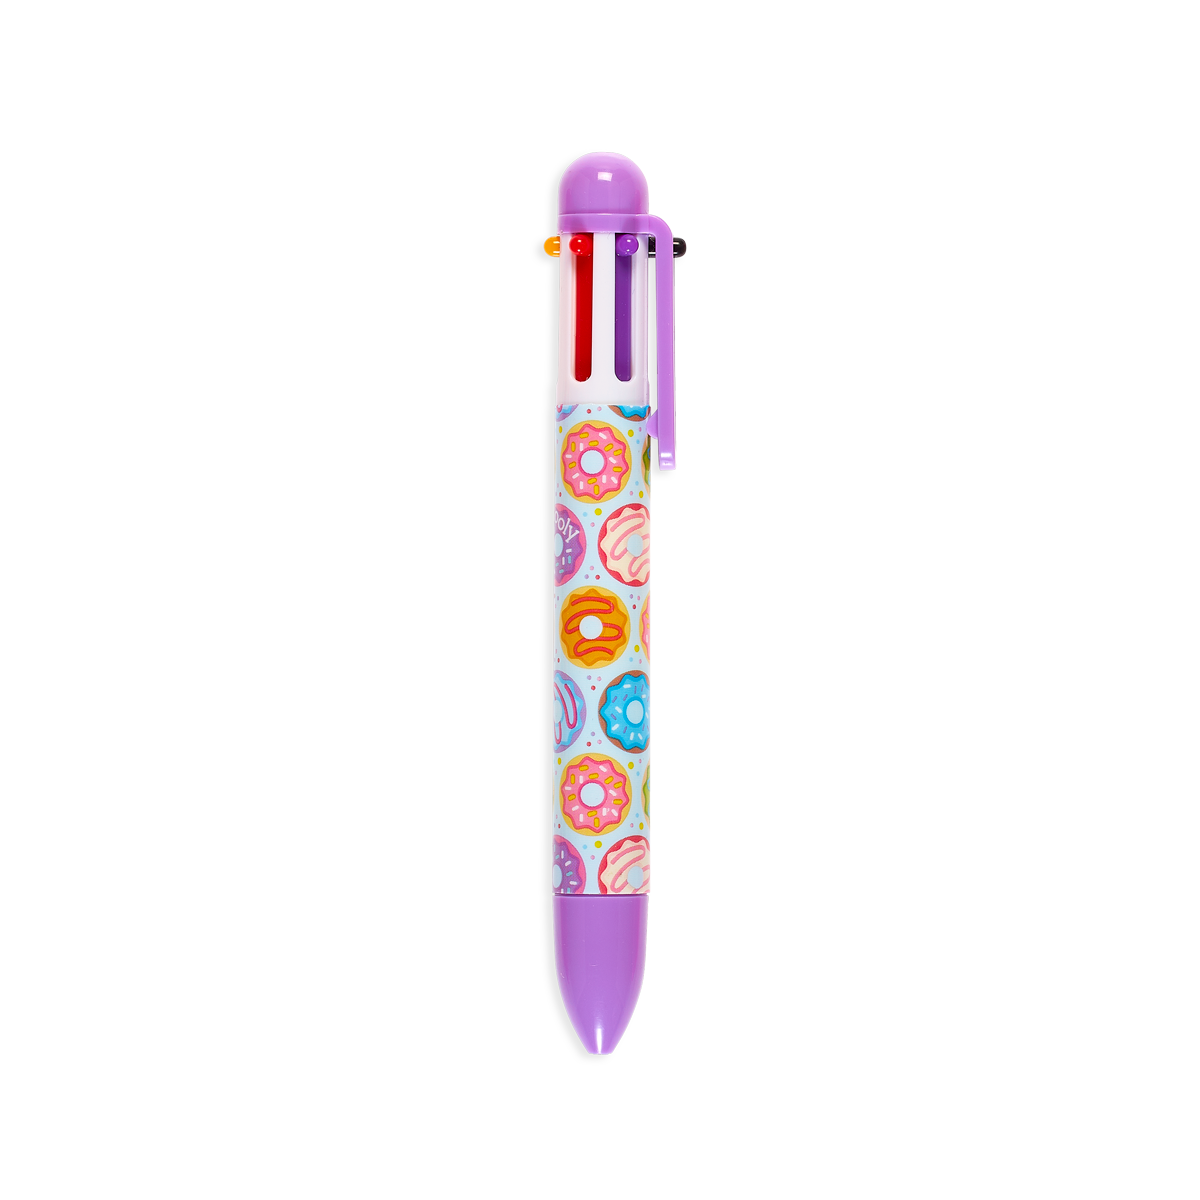 OOLY Sugar Joy 6 Click Multicolor Pen in purple